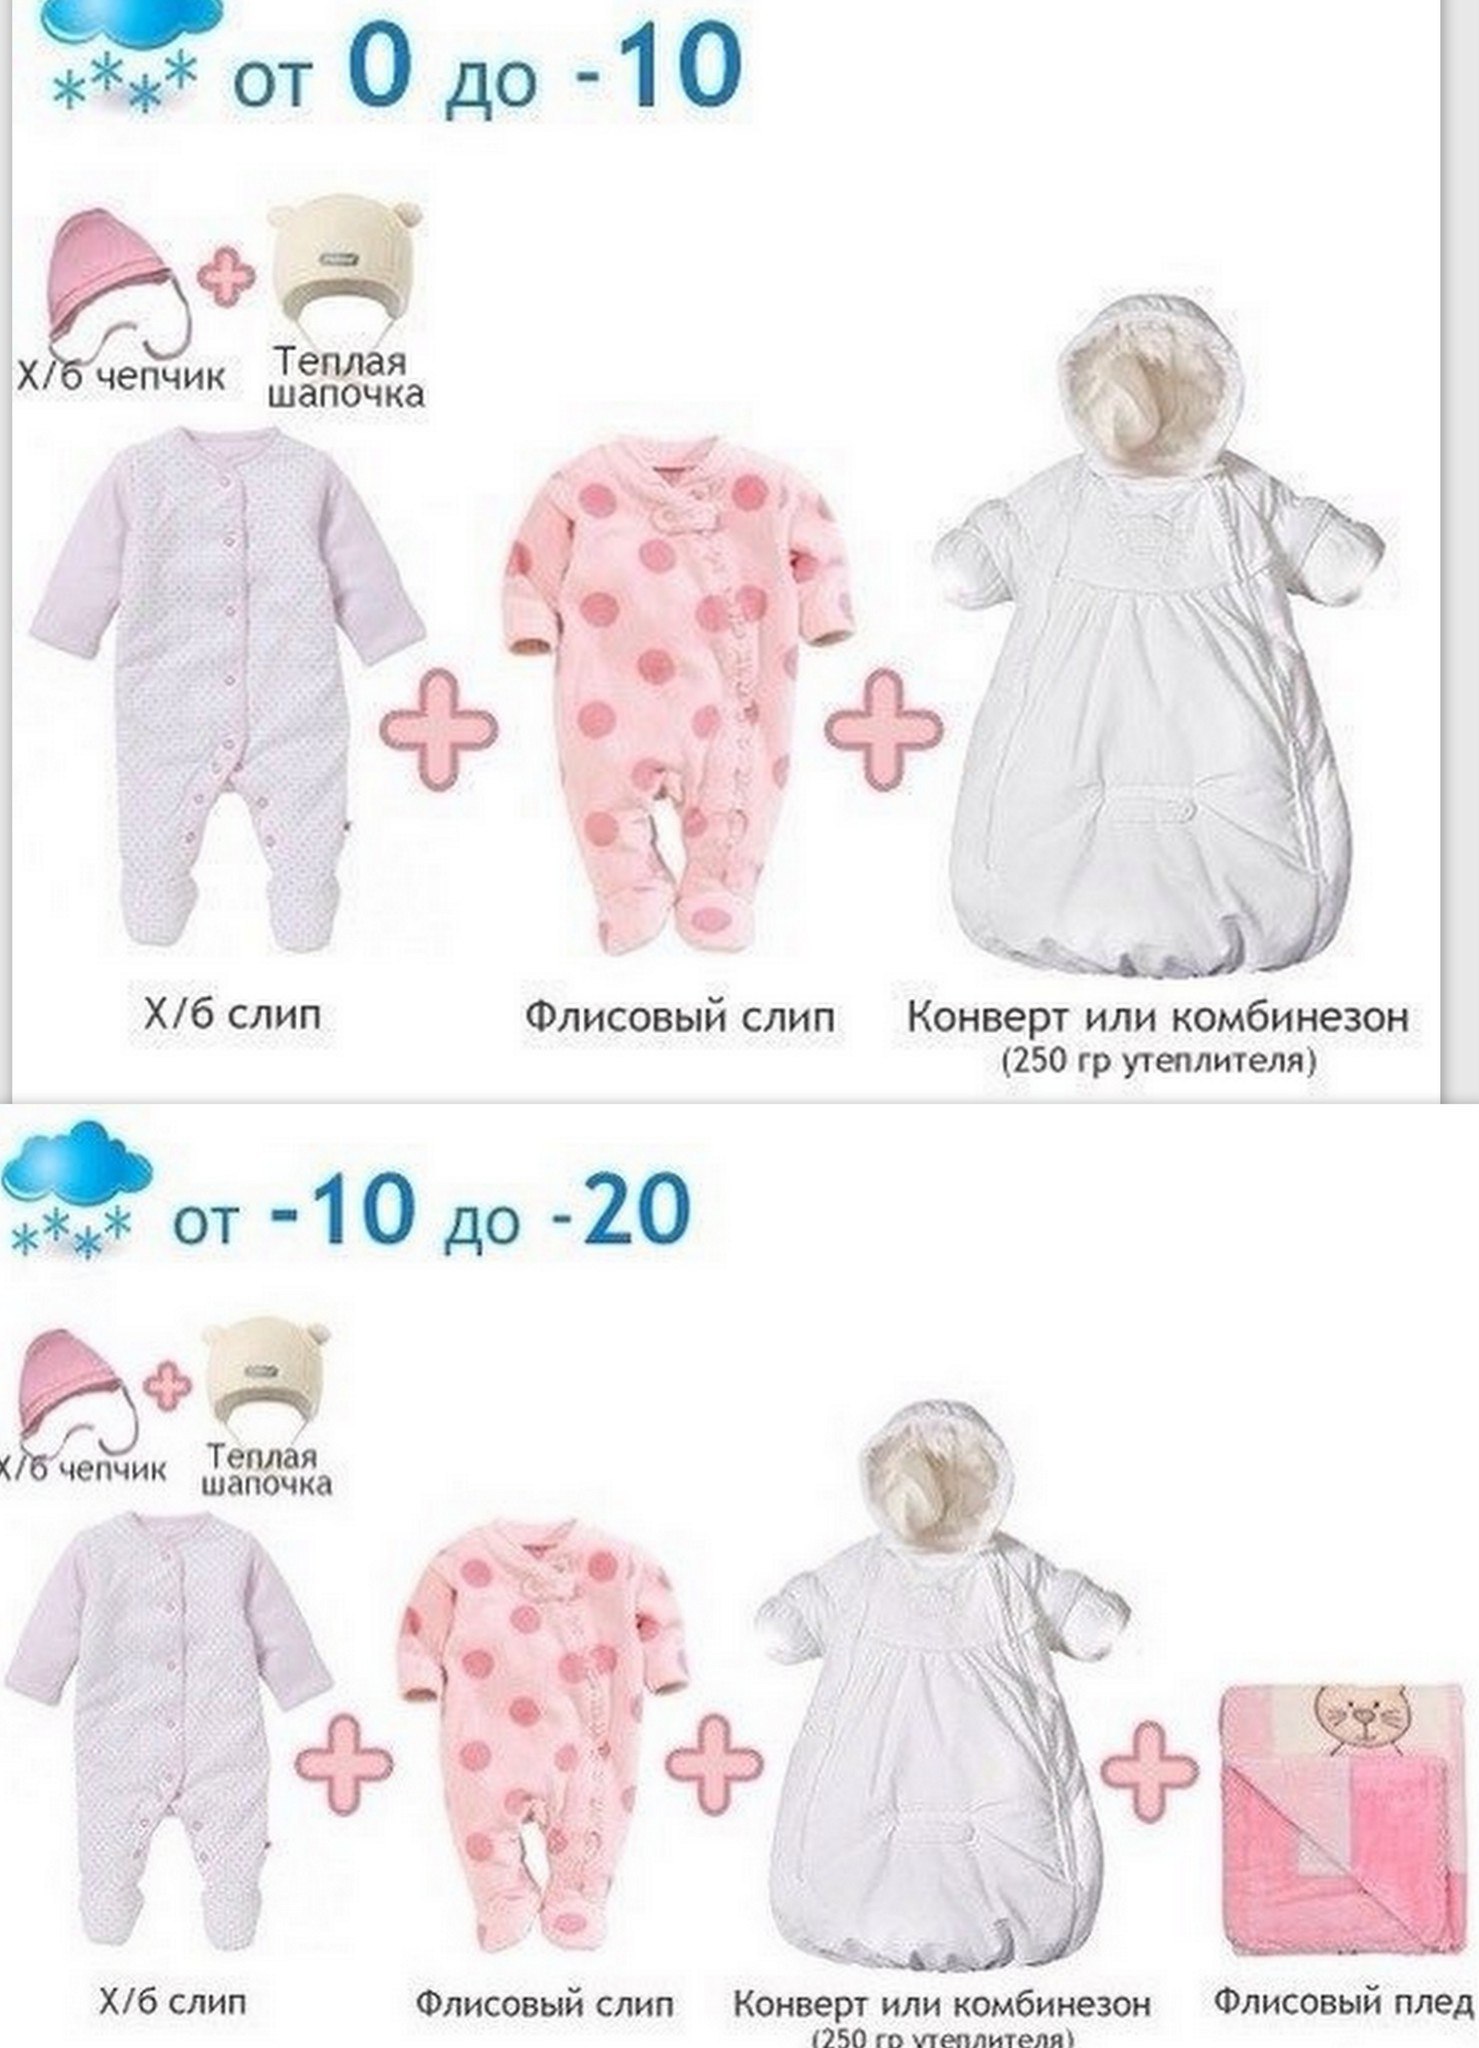 Как одевать трехмесячного ребенка. Одежда для новорожденных по градусам. Как одевать малыша. Как одевать новорожденного. Одежда для младенца по градусам.